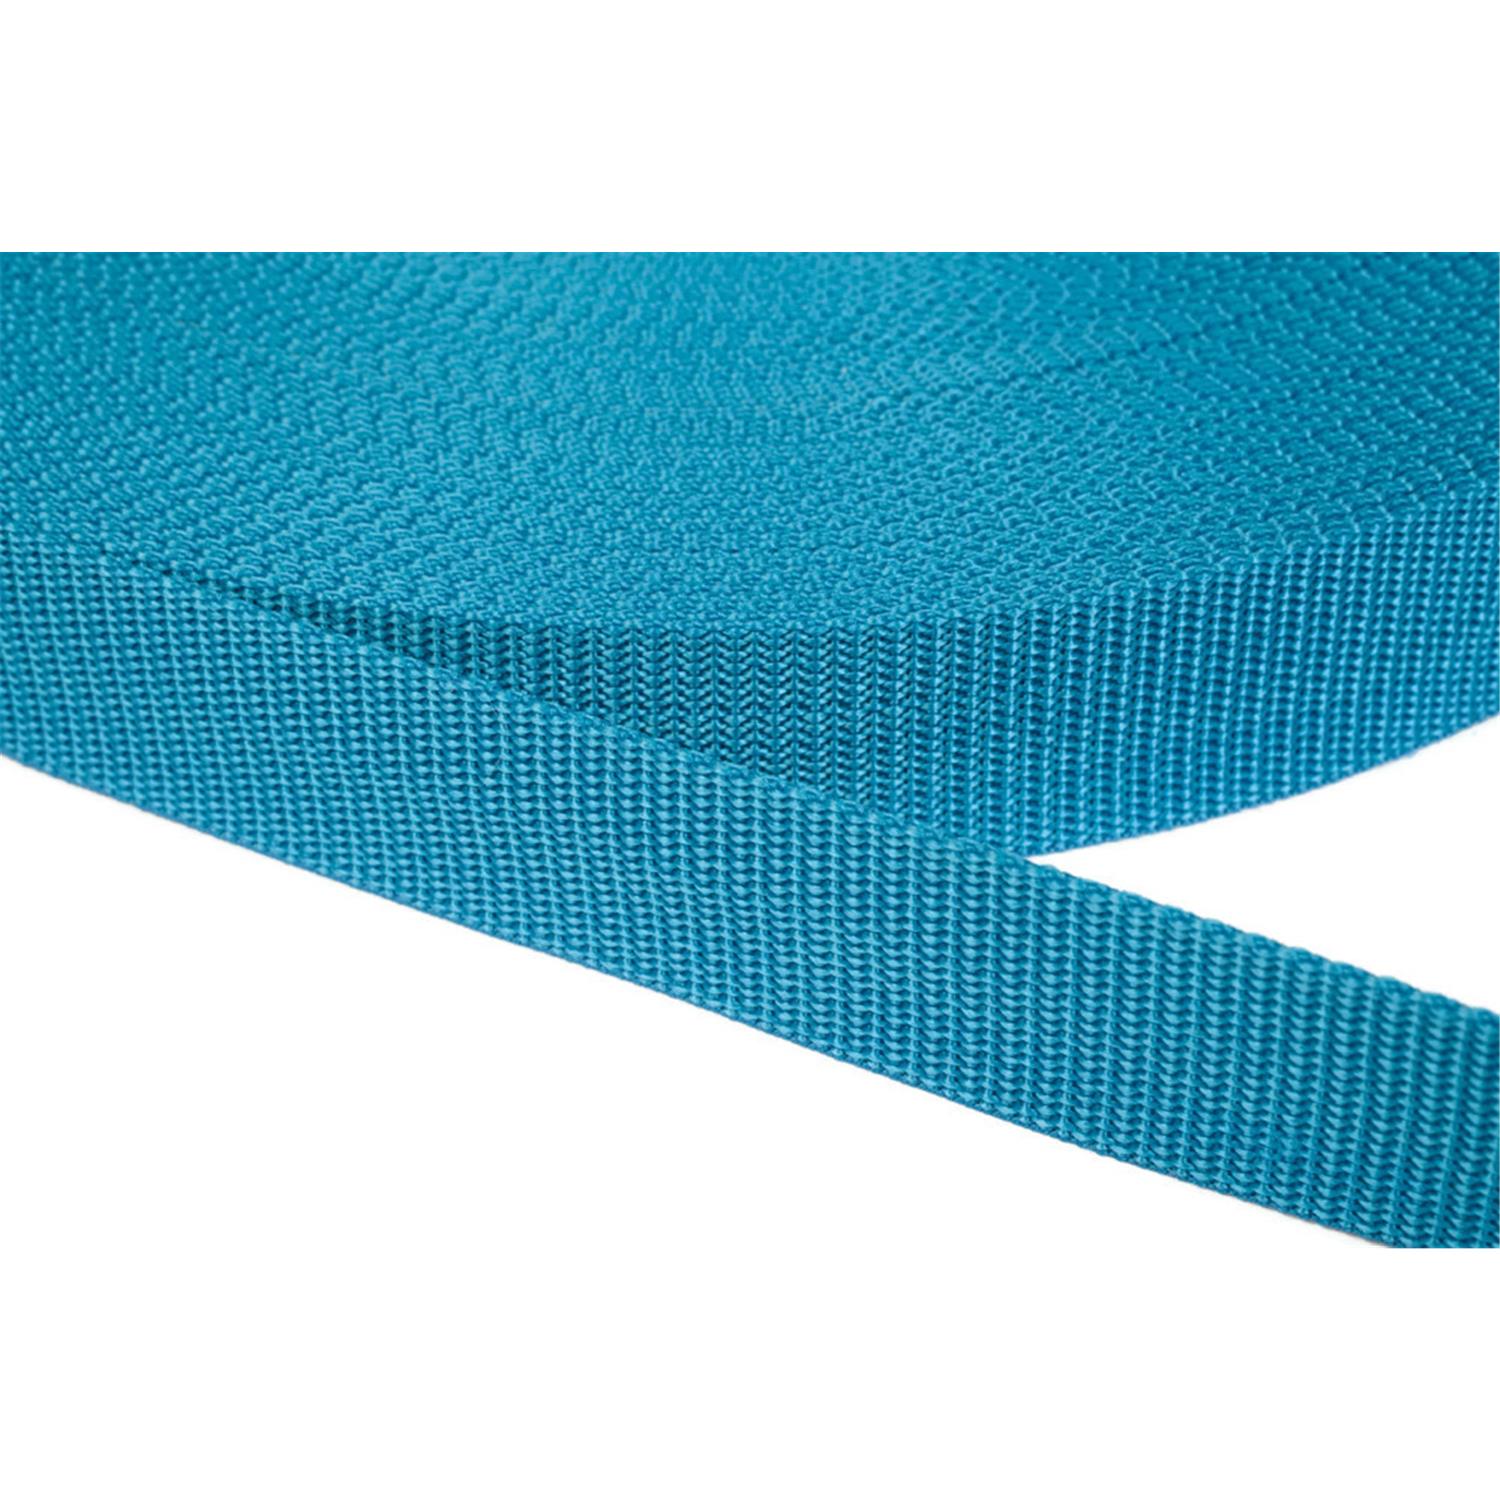 Gurtband 20mm breit aus Polypropylen in 41 Farben 29 - türkis 50 Meter